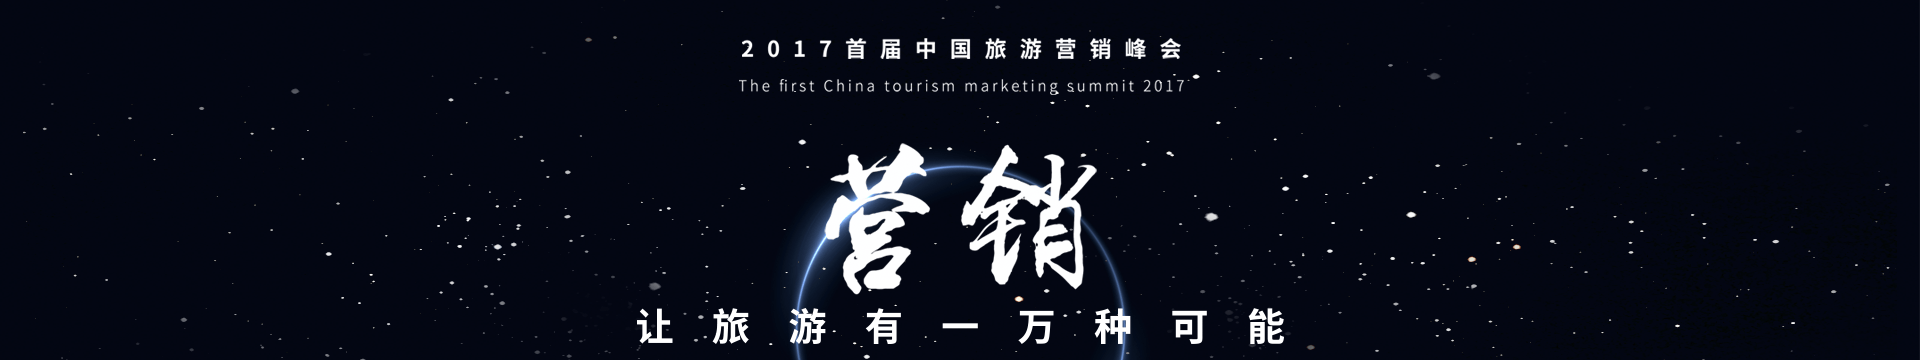 2017首届中国旅游营销峰会